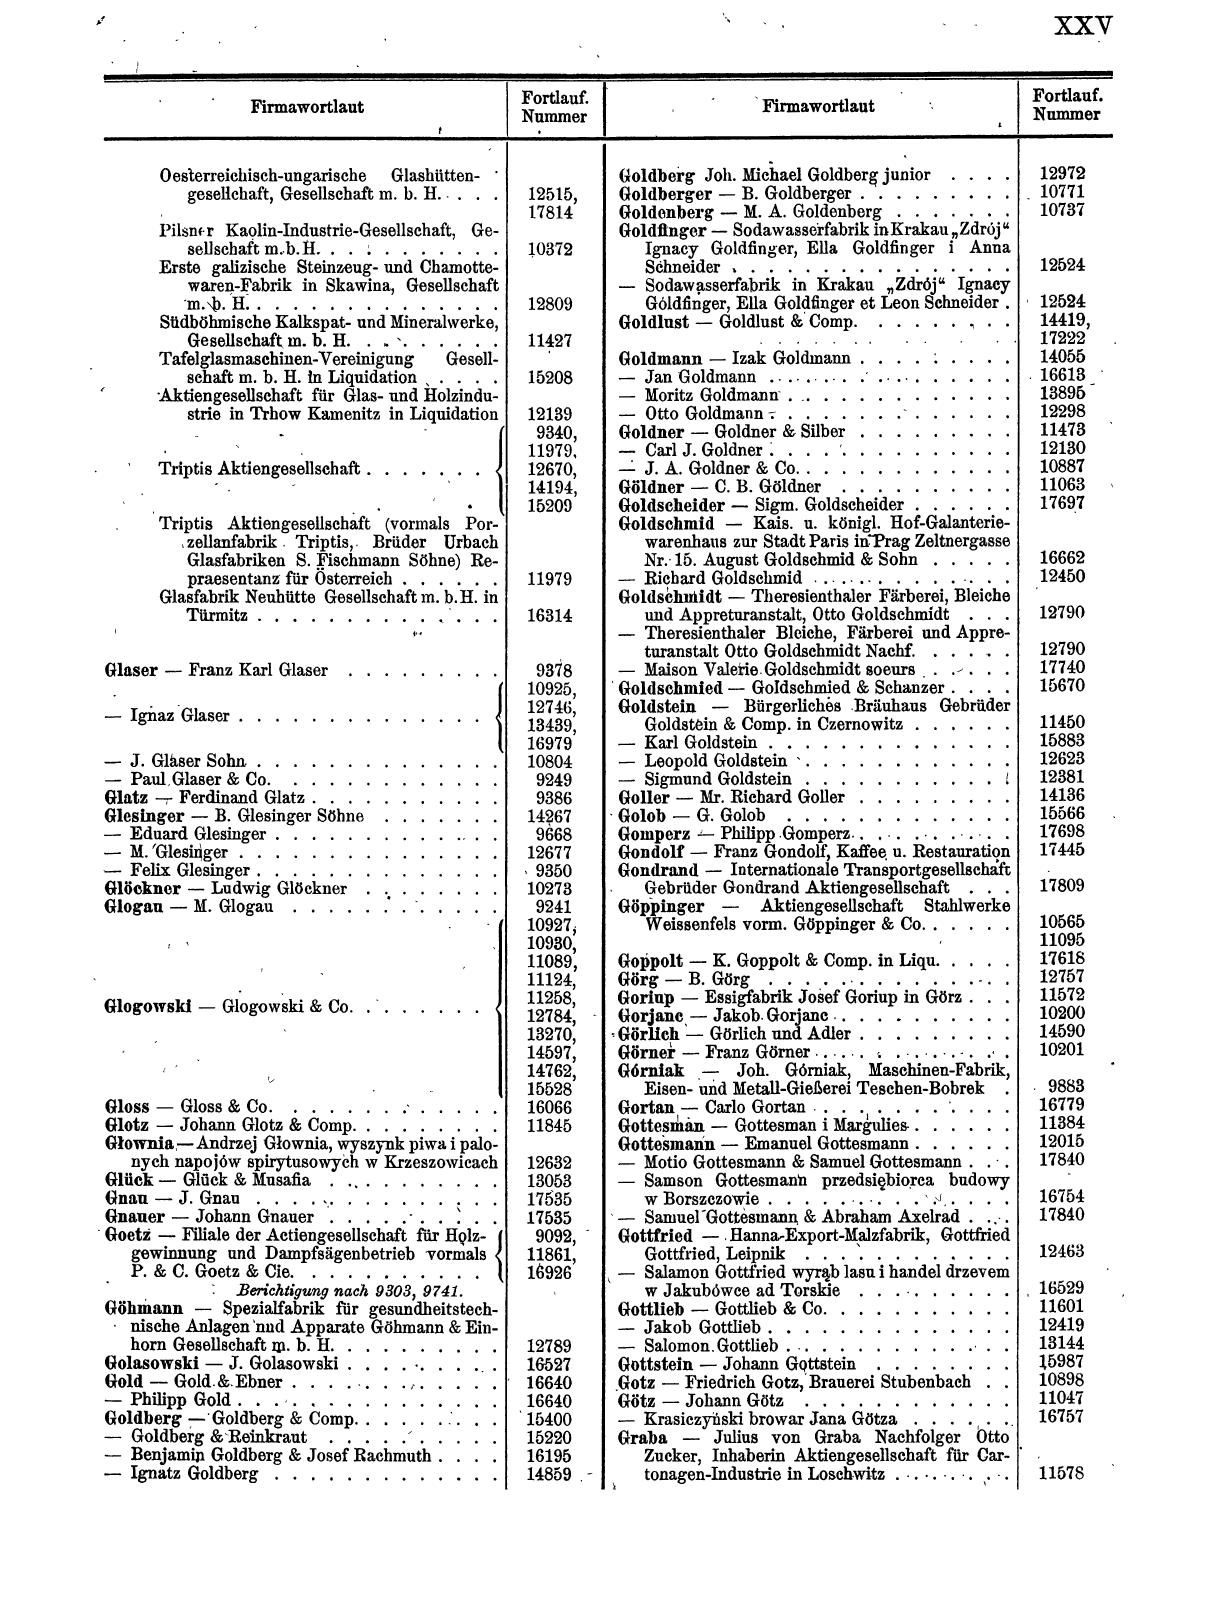 Zentralblatt für die Eintragungen in das Handelsregister 1913, Teil 2 - Seite 29